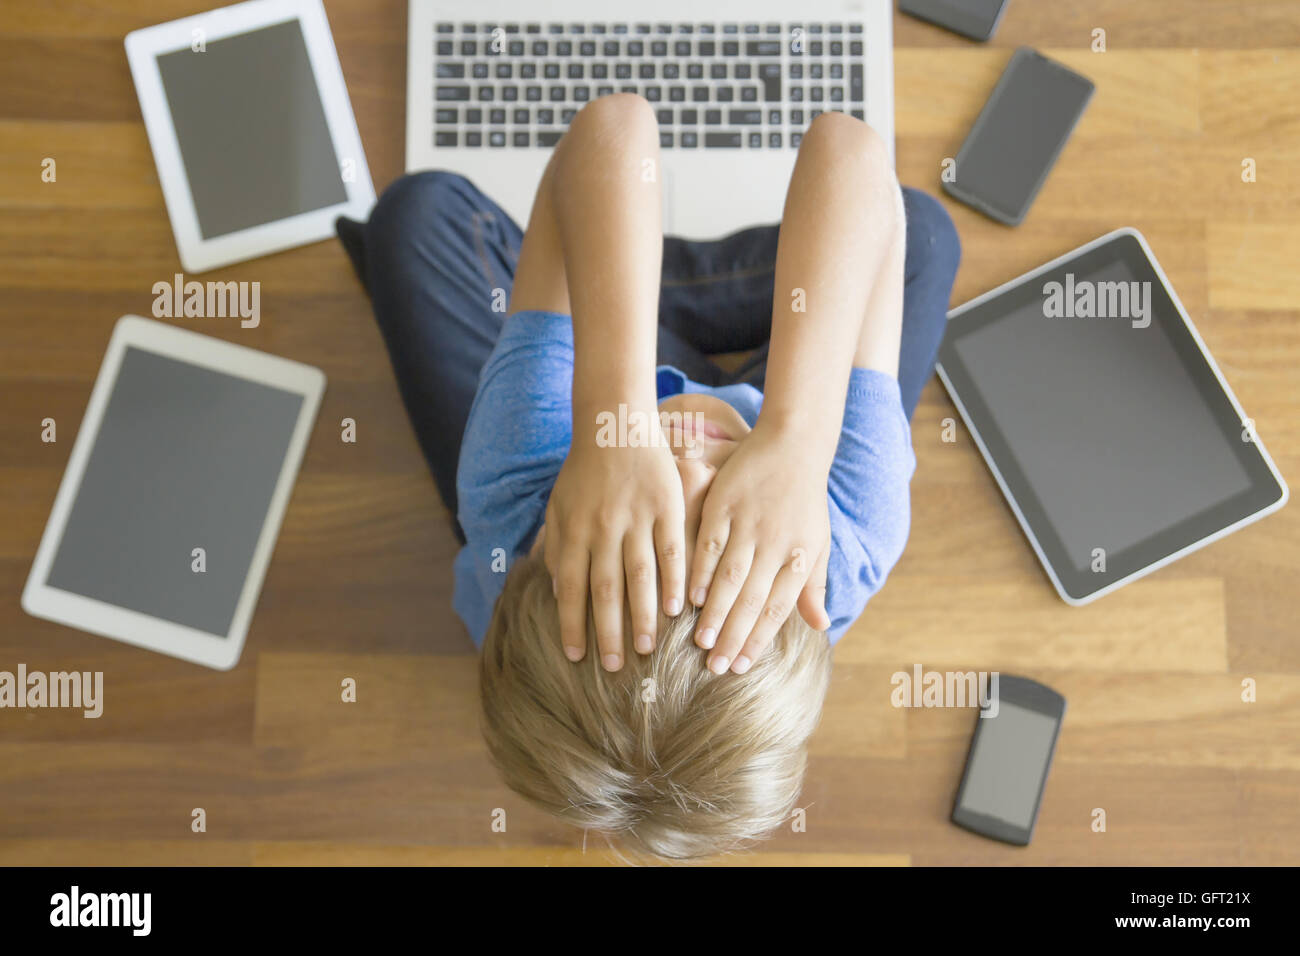 Müde, traurig junge mit Tabletten, Handys, Laptop überall zu Hause. Ansicht  von oben. Bildung, lernen, Technik, sucht Konzept Stockfotografie - Alamy